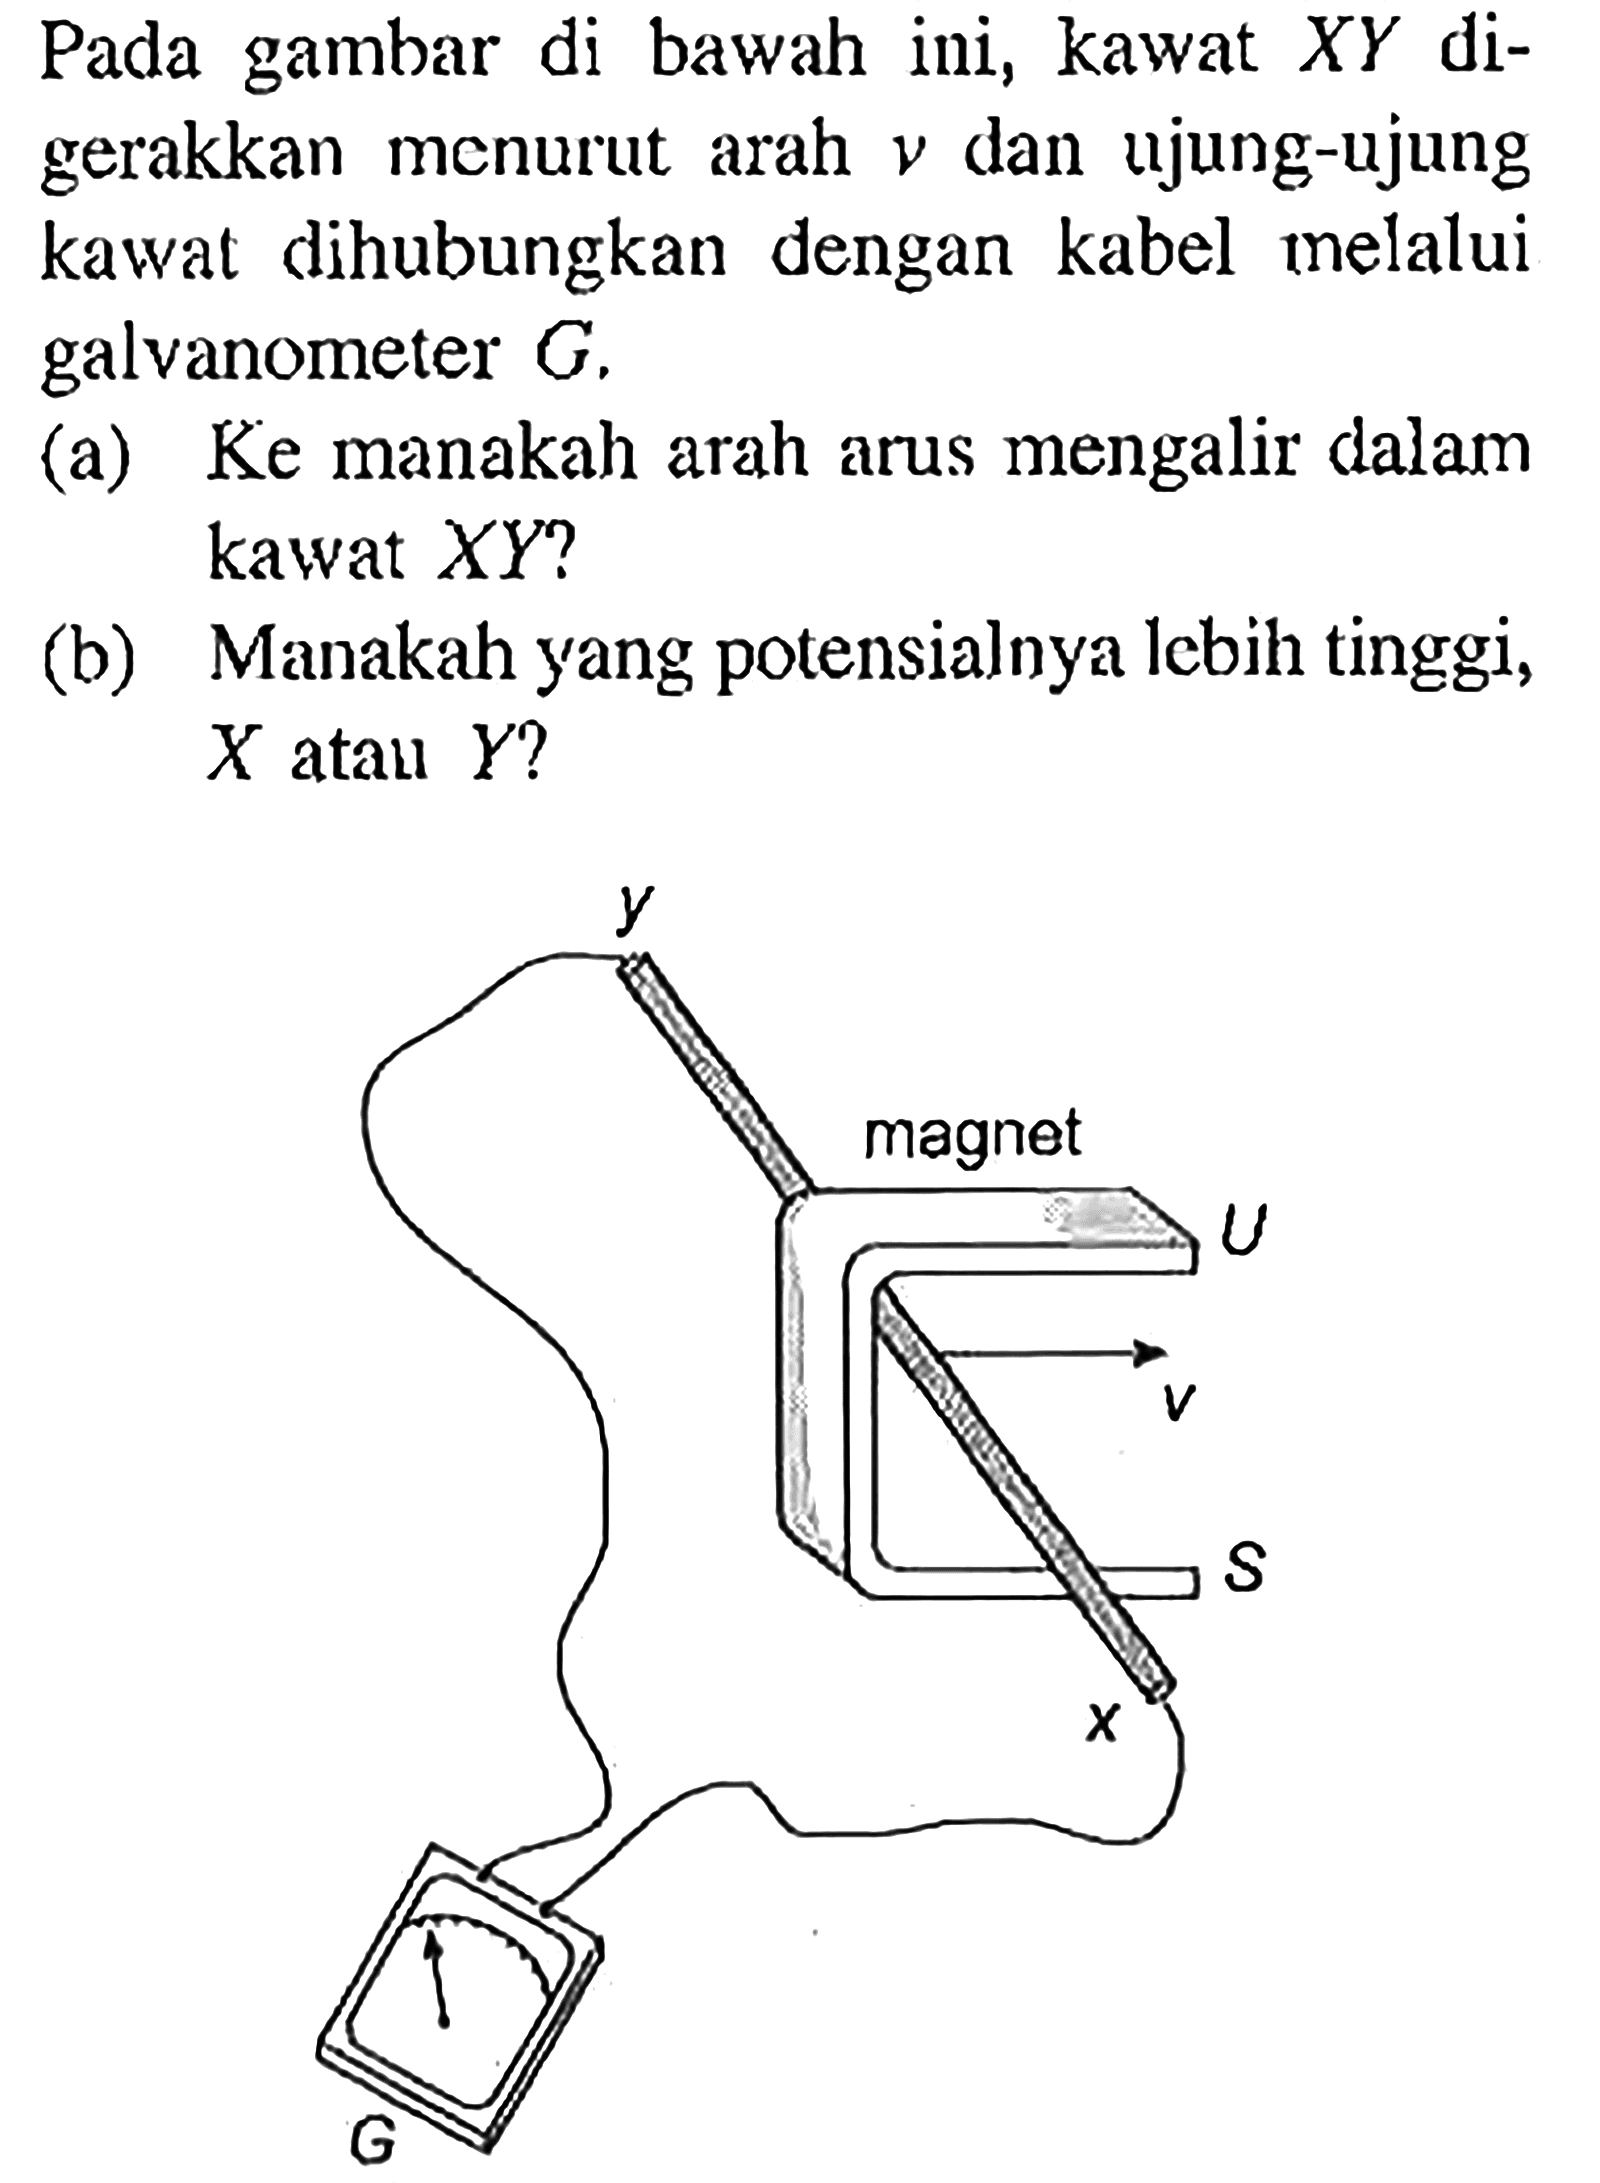 Pada gambar di bawah ini, kawat XY digerakkan menurut arah v dan ujung-ujung kawat dihubungkan dengan kabel melalui galvanometer G. (a) Ke manakah arah arus mengalir dalam kawat XY? (b) Manakah yang potensial lebih tinggi, X atau Y?